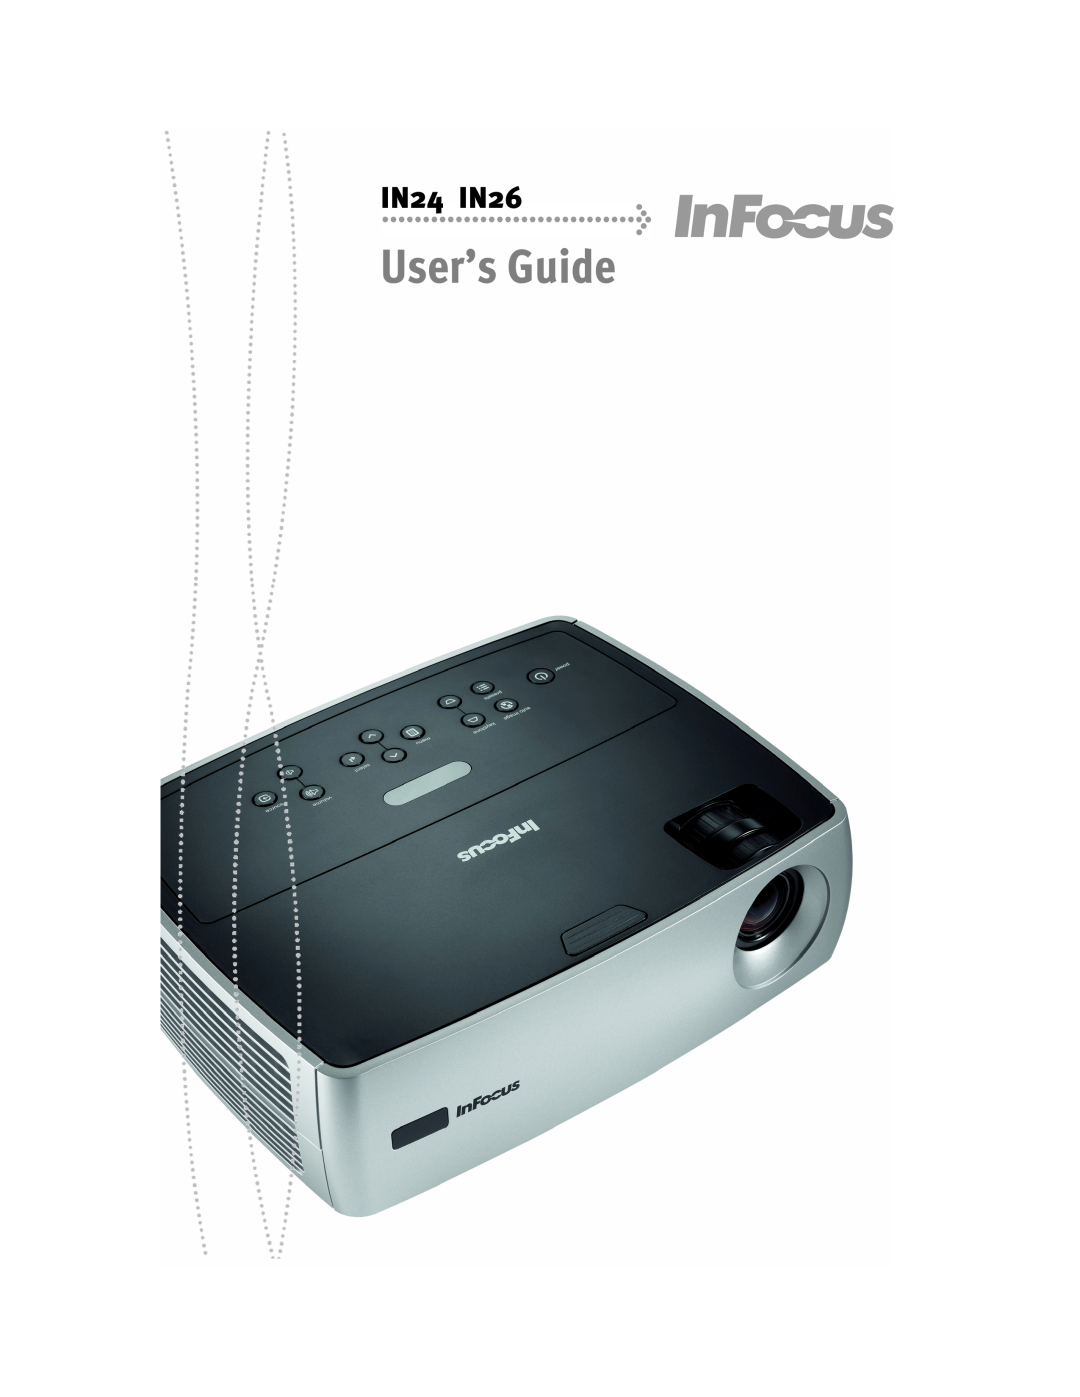 InFocus manual User’s Guide, IN24 IN26 